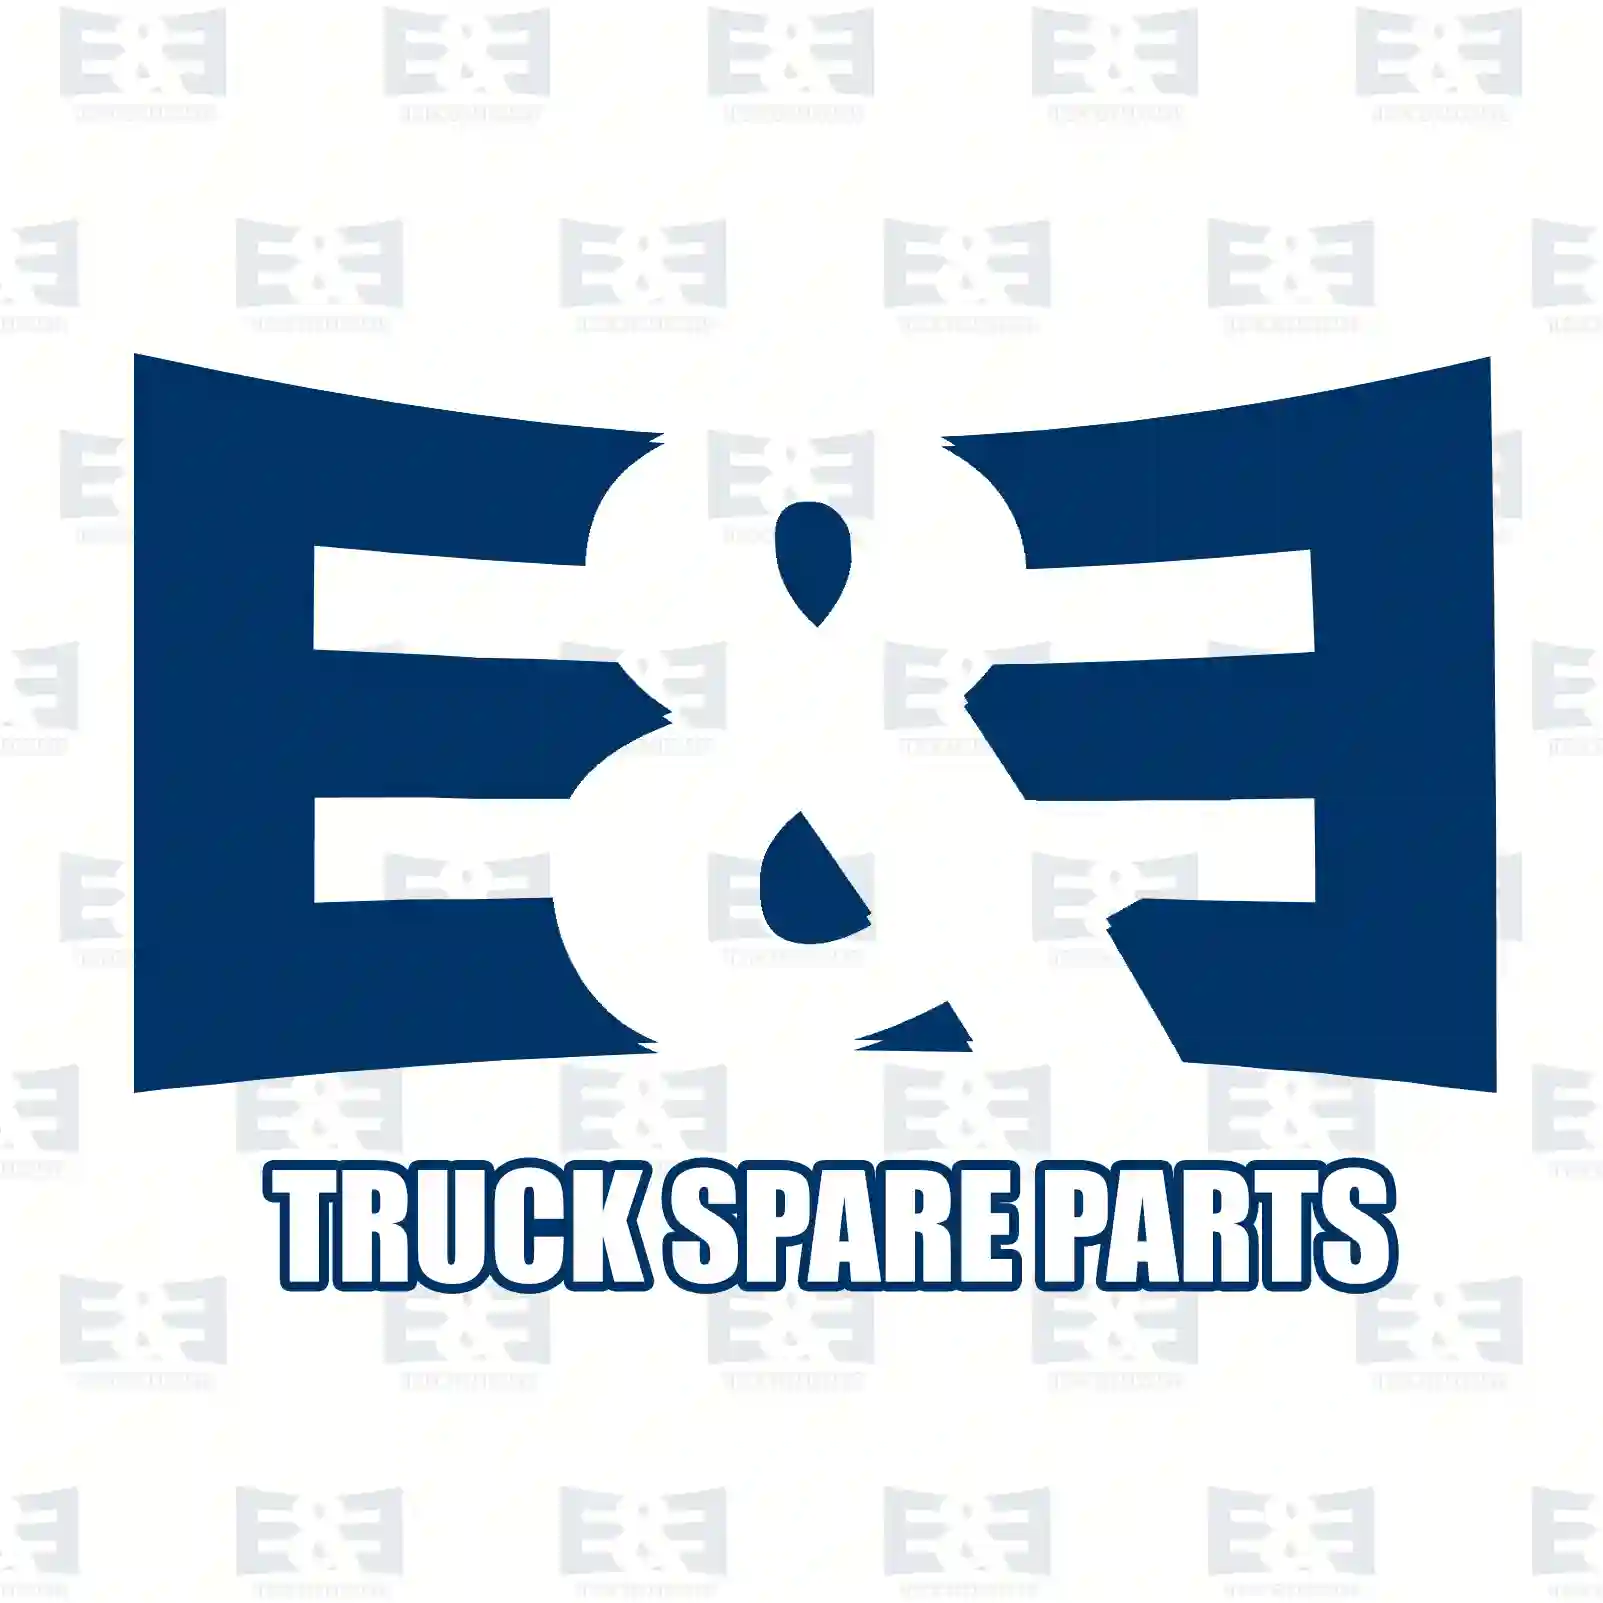 O-ring, thermostat, 2E2285670, 059121119, 1002908, 1144214, MN980138, 0820111496, 026121119, 038121119B, 038121119C, 055121011, 055121011A, 056121011, 059121119, 059121119B, 068121011A ||  2E2285670 E&E Truck Spare Parts | Truck Spare Parts, Auotomotive Spare Parts O-ring, thermostat, 2E2285670, 059121119, 1002908, 1144214, MN980138, 0820111496, 026121119, 038121119B, 038121119C, 055121011, 055121011A, 056121011, 059121119, 059121119B, 068121011A ||  2E2285670 E&E Truck Spare Parts | Truck Spare Parts, Auotomotive Spare Parts